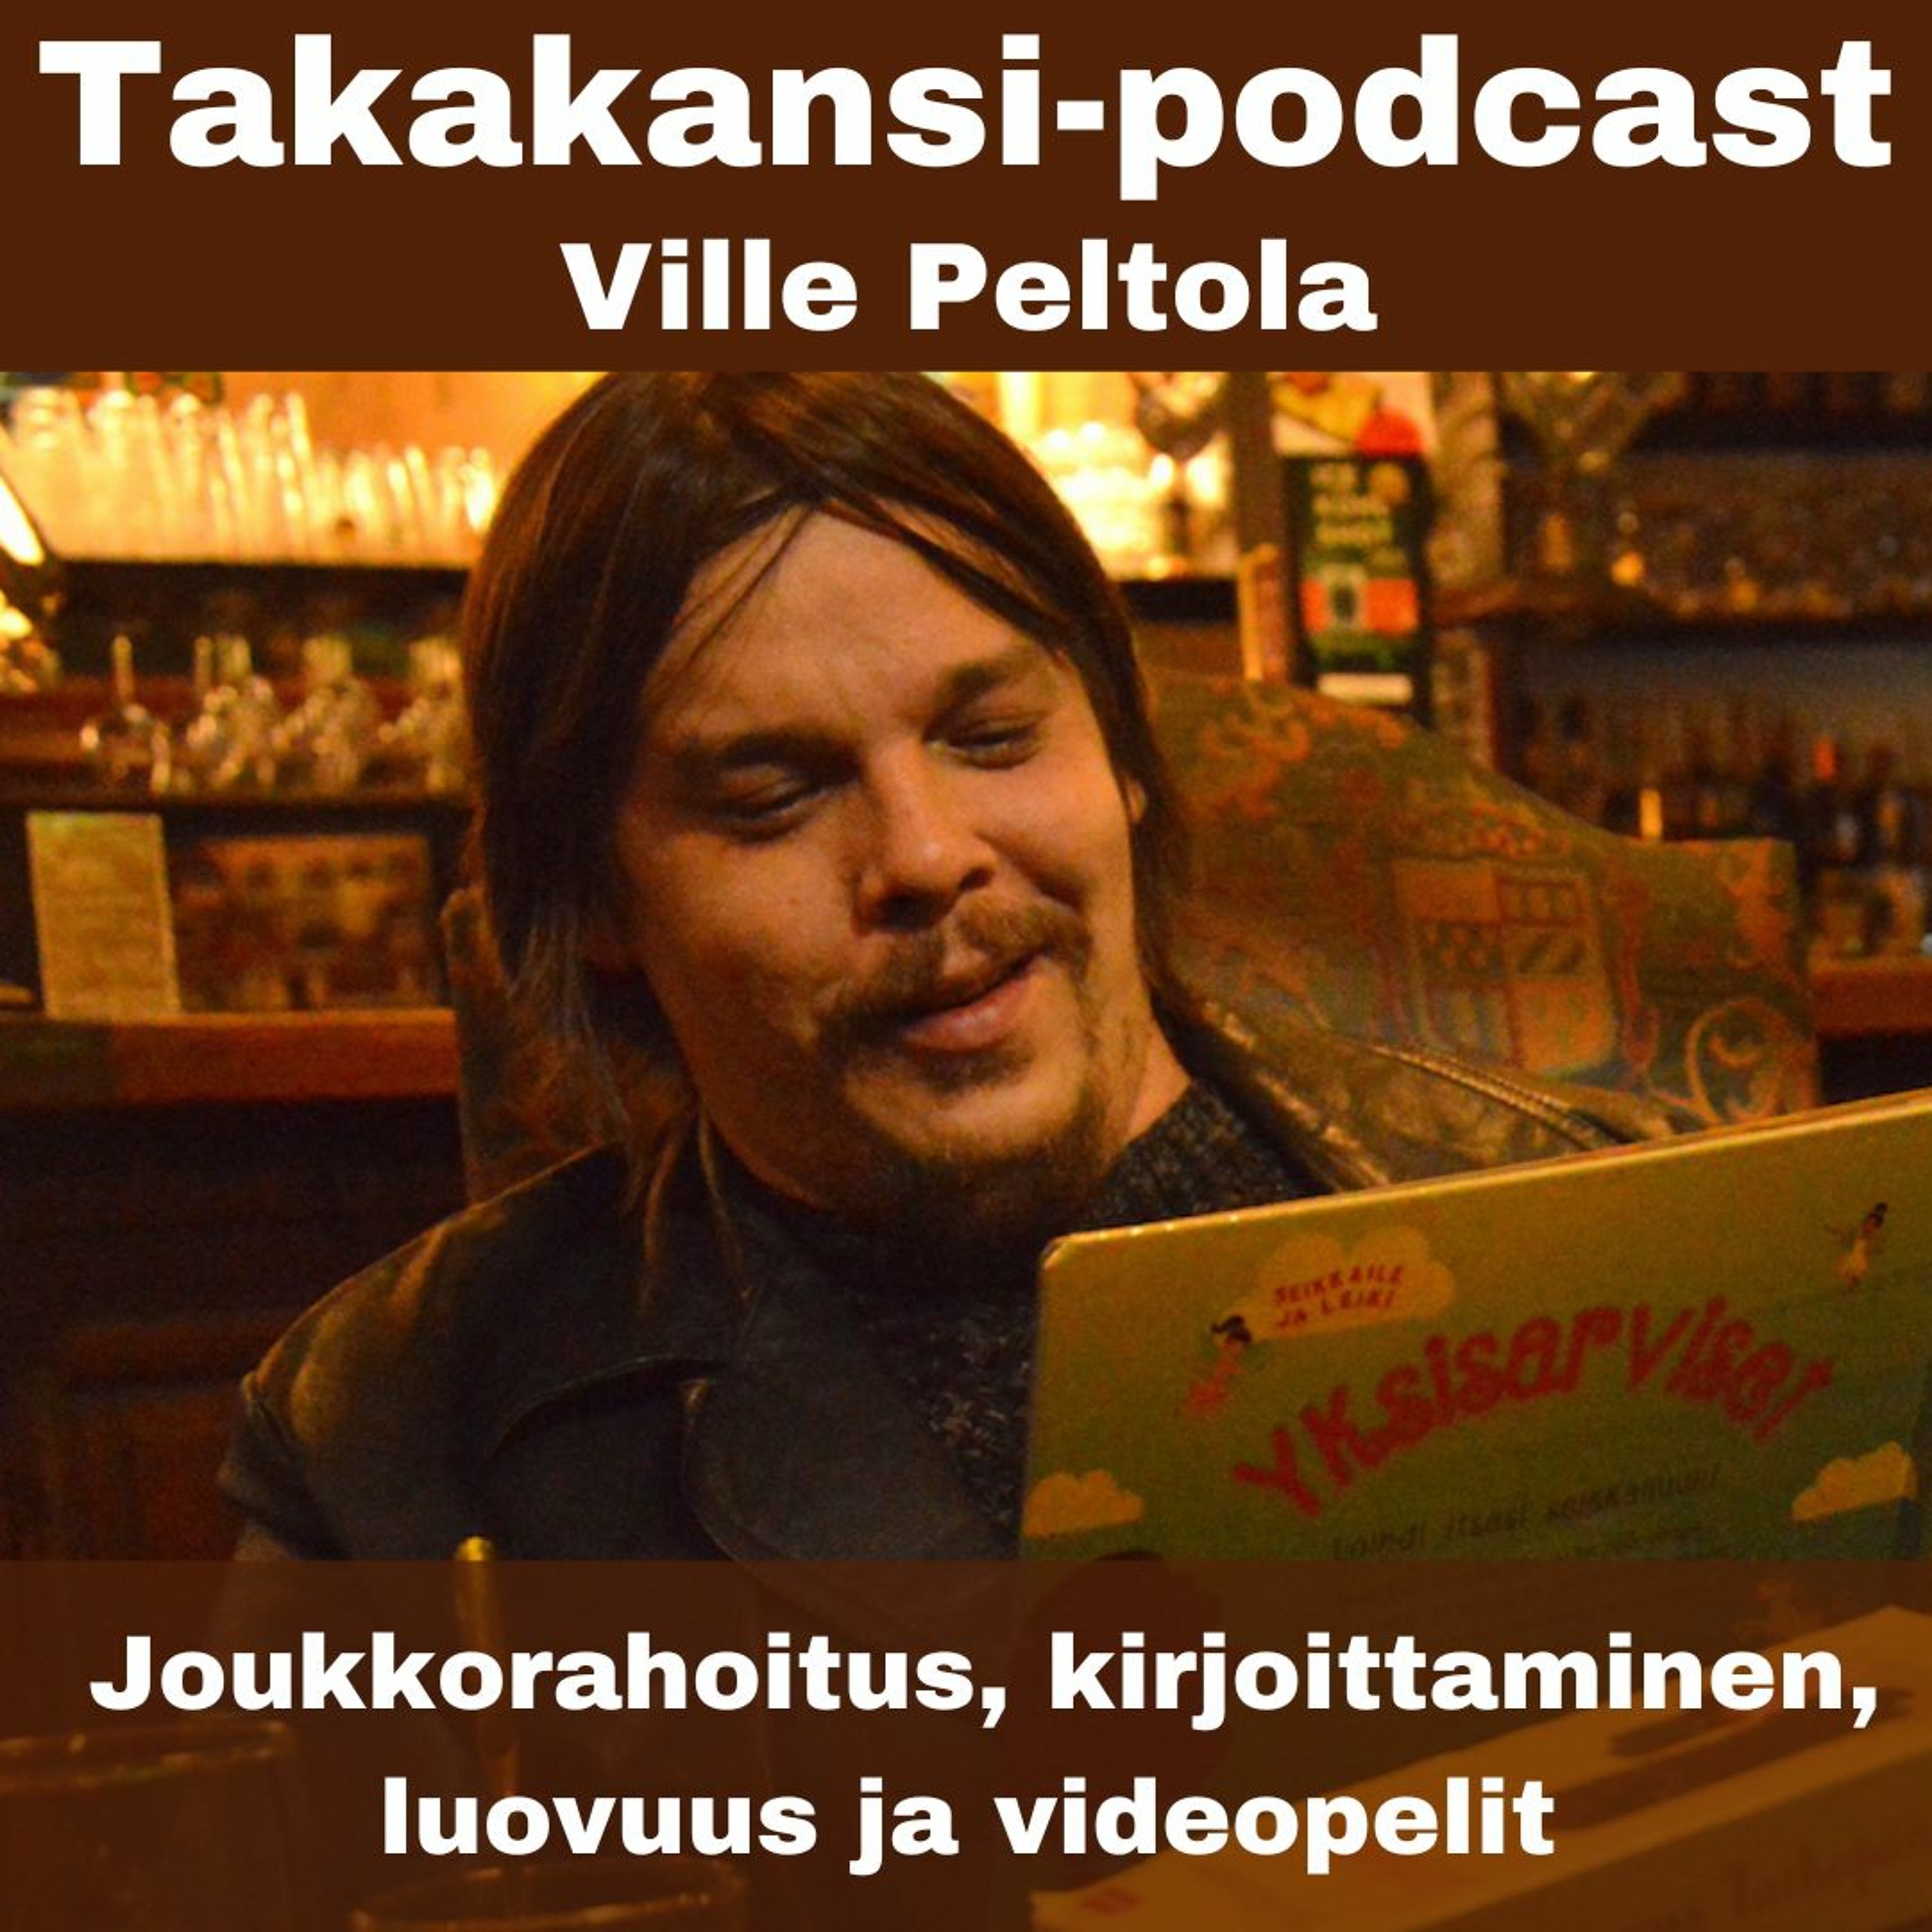 Ville Peltola - Joukkorahoitus, kirjoittaminen, luovuus ja videopelit